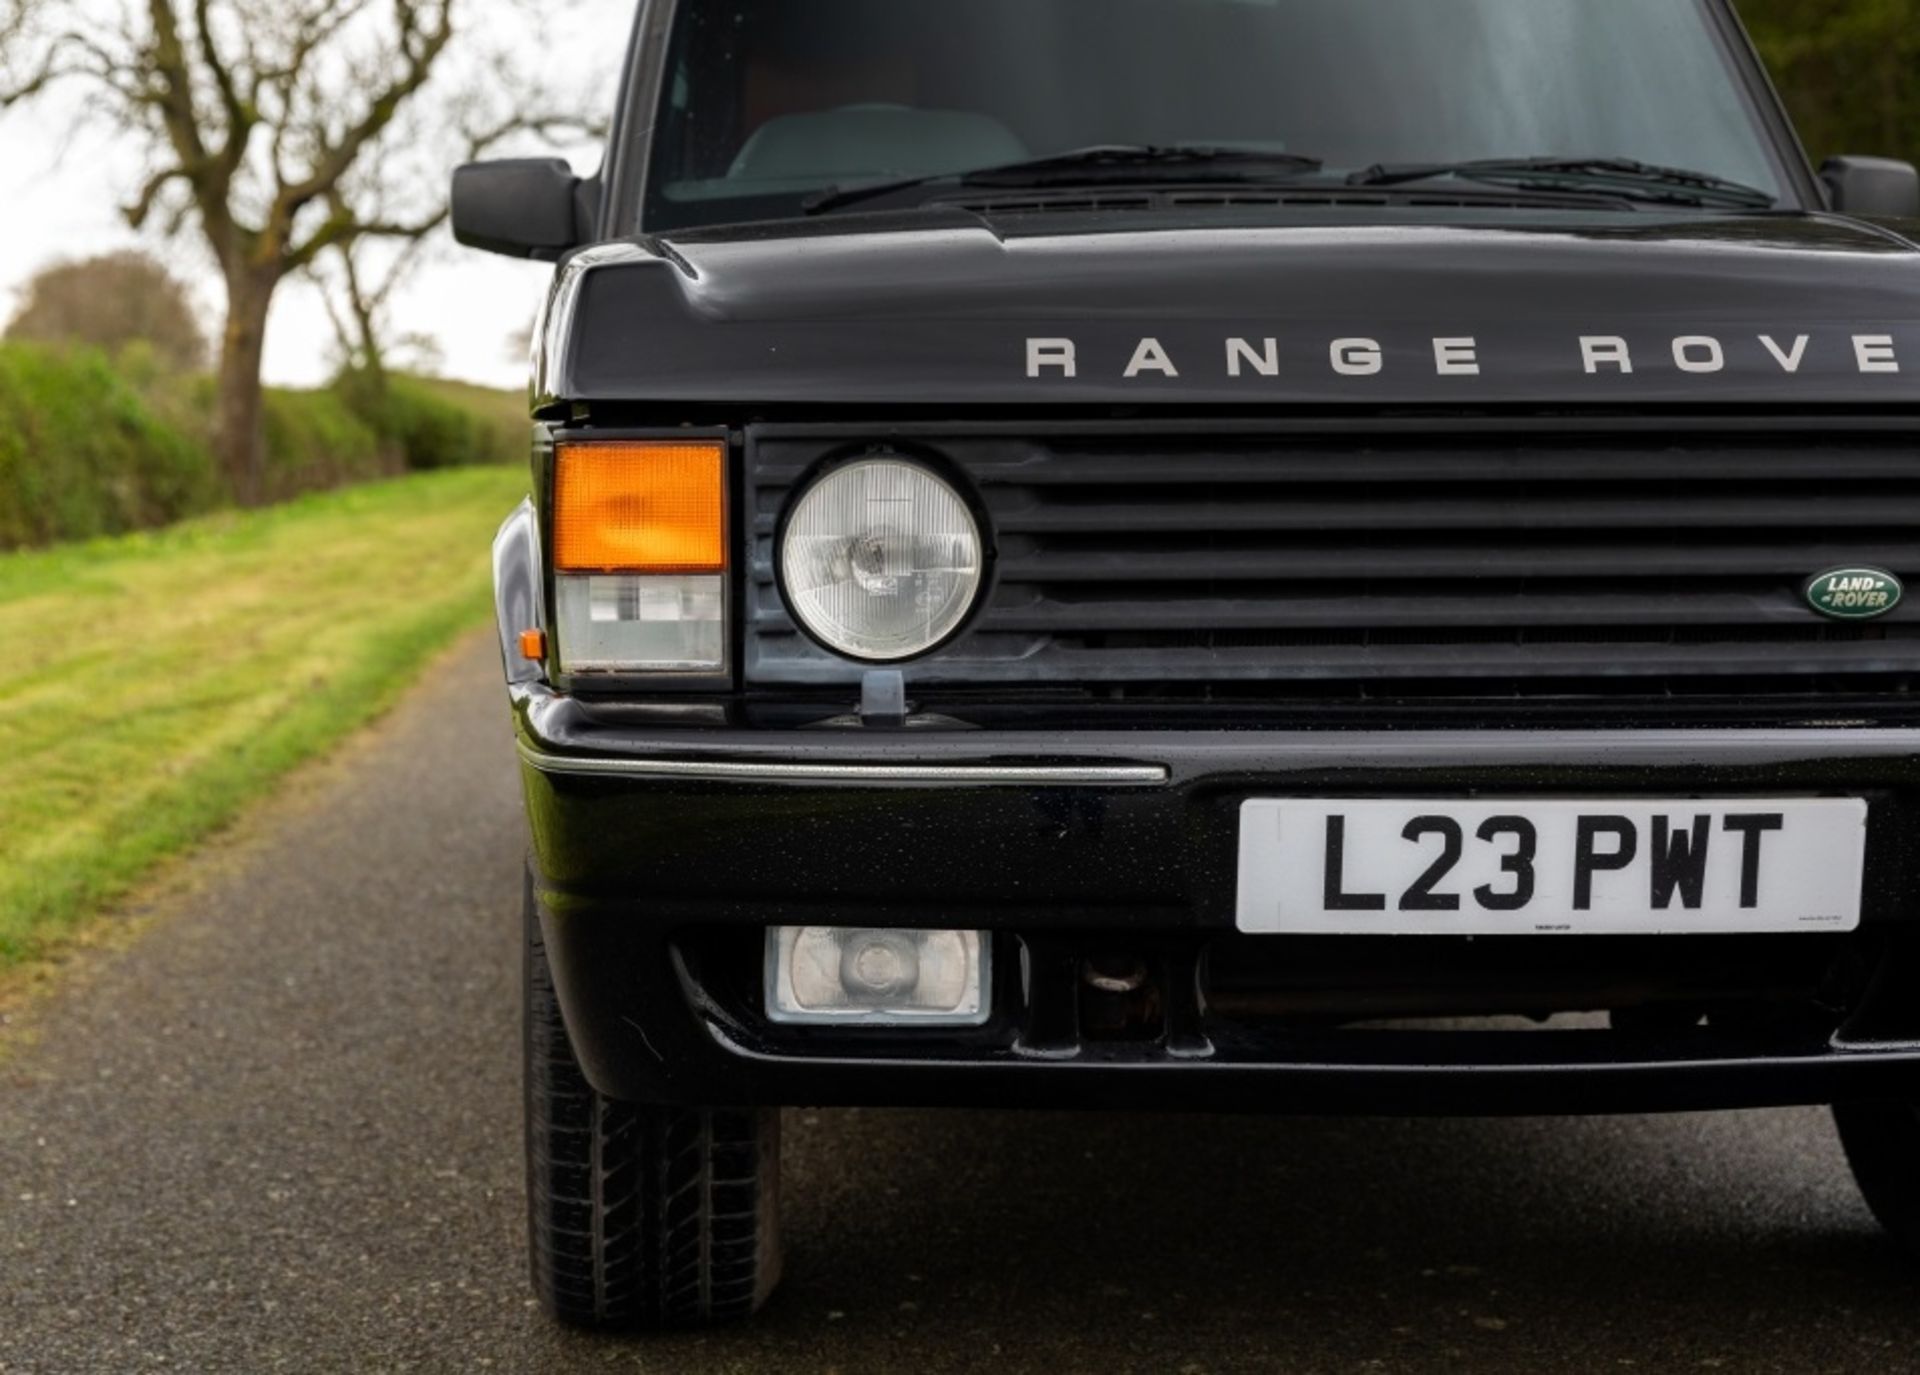 1994 Range Rover Vogue LSE 4.3 V8 Limousine - Image 56 of 80